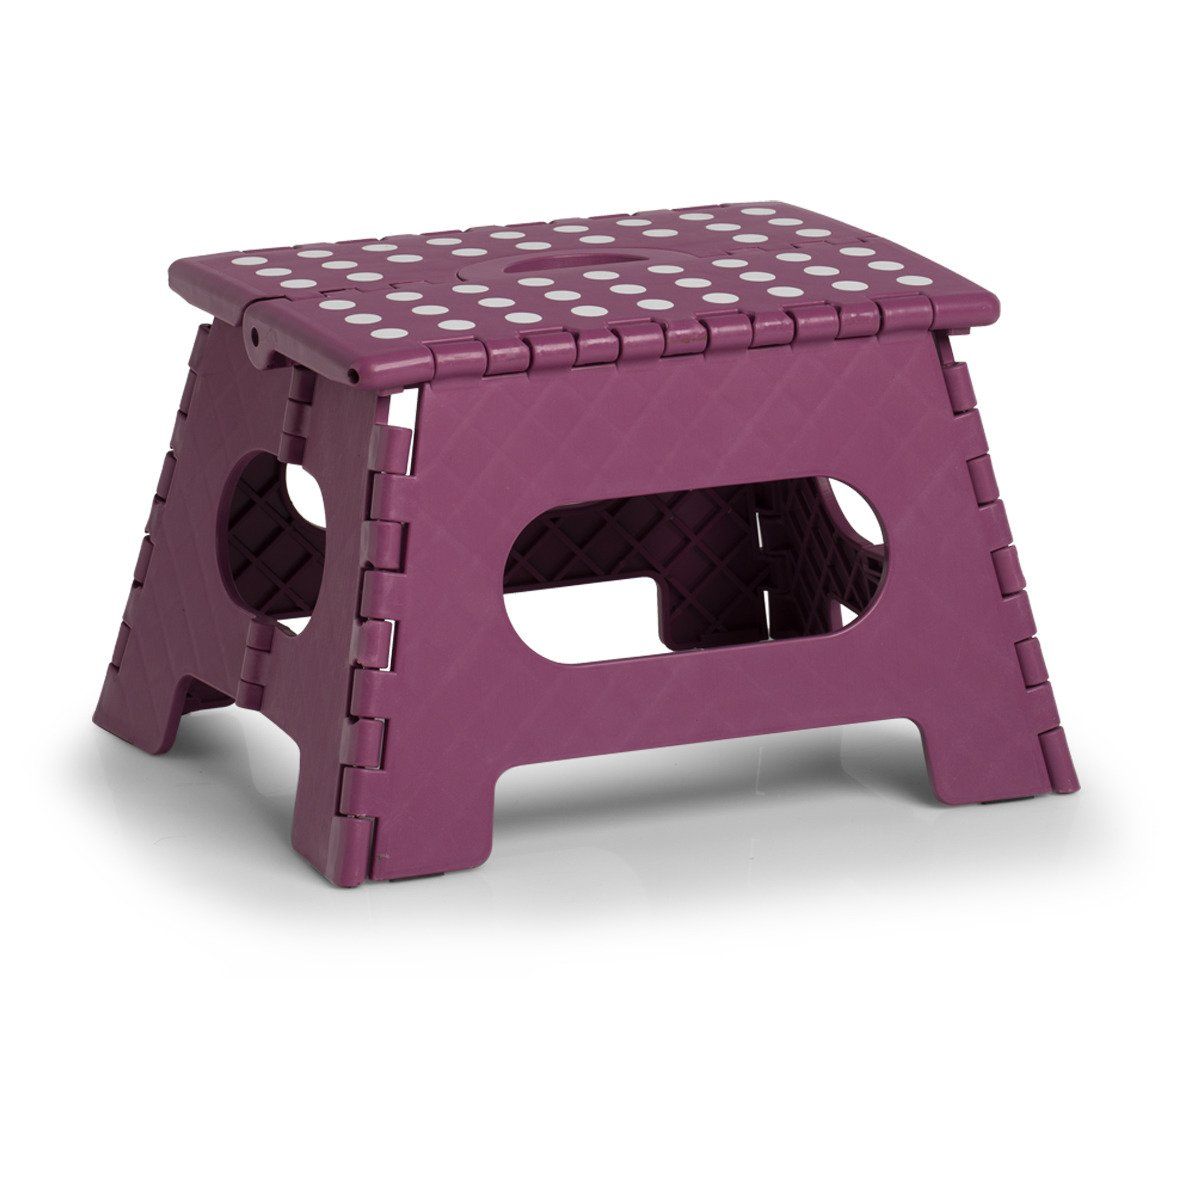 Protiskluzová skládací stolička, fialová, 35 x 28 x 22 cm, ZELLER - EDAXO.CZ s.r.o.